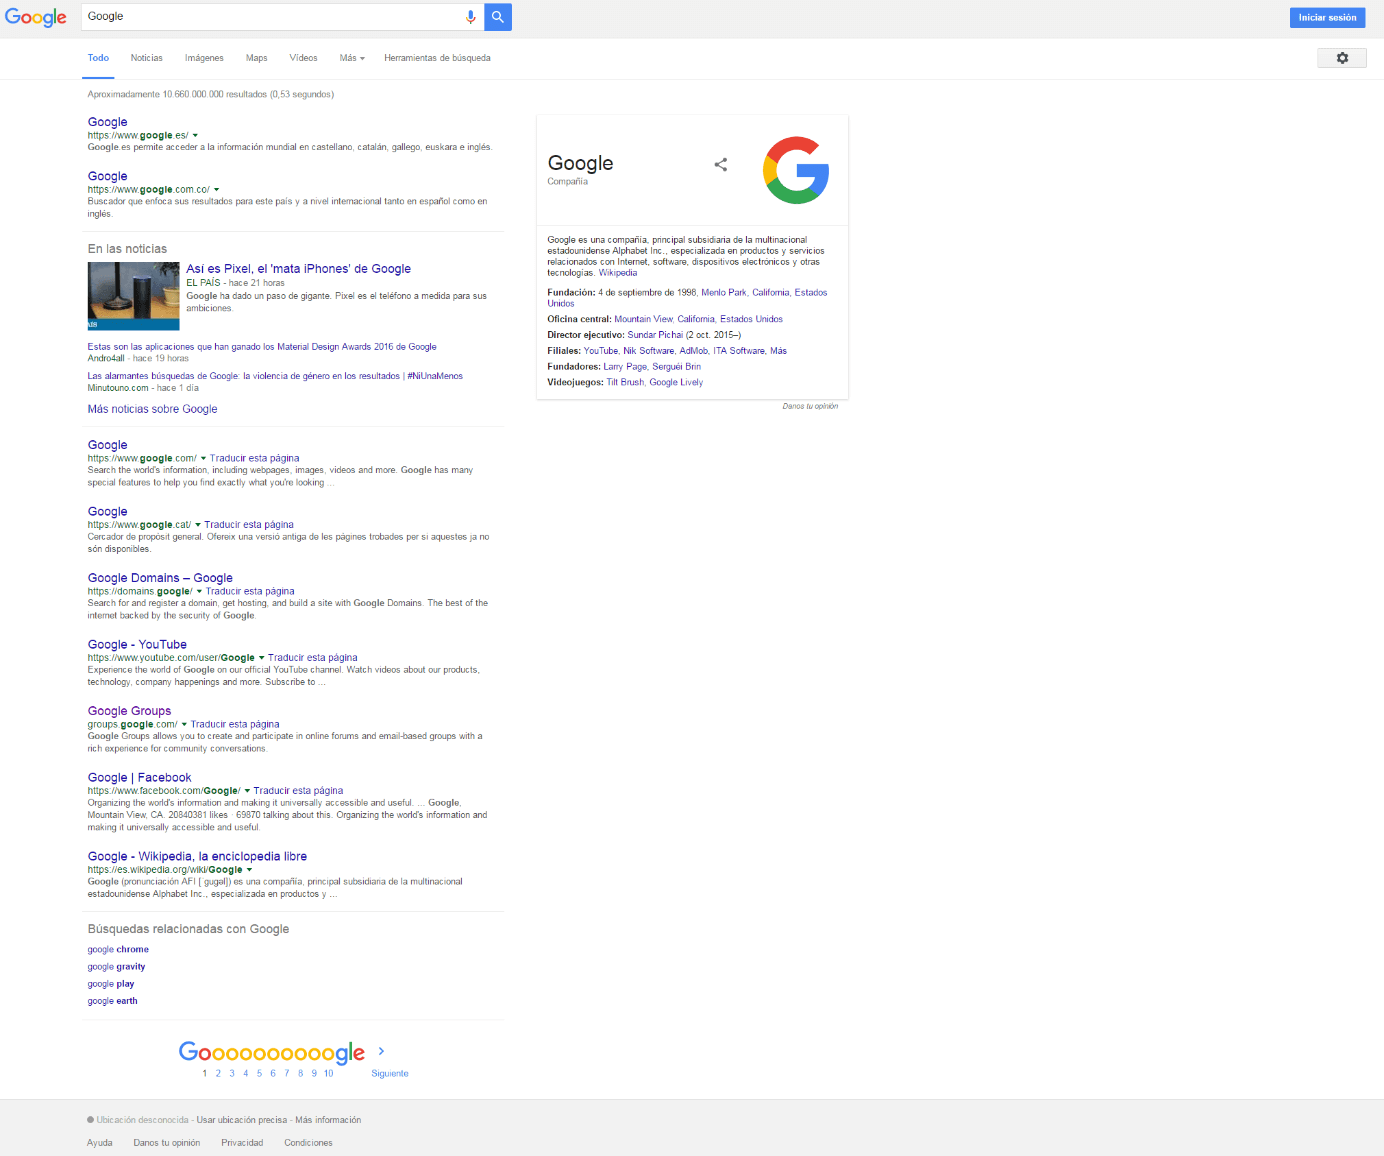 La vista actual de Google